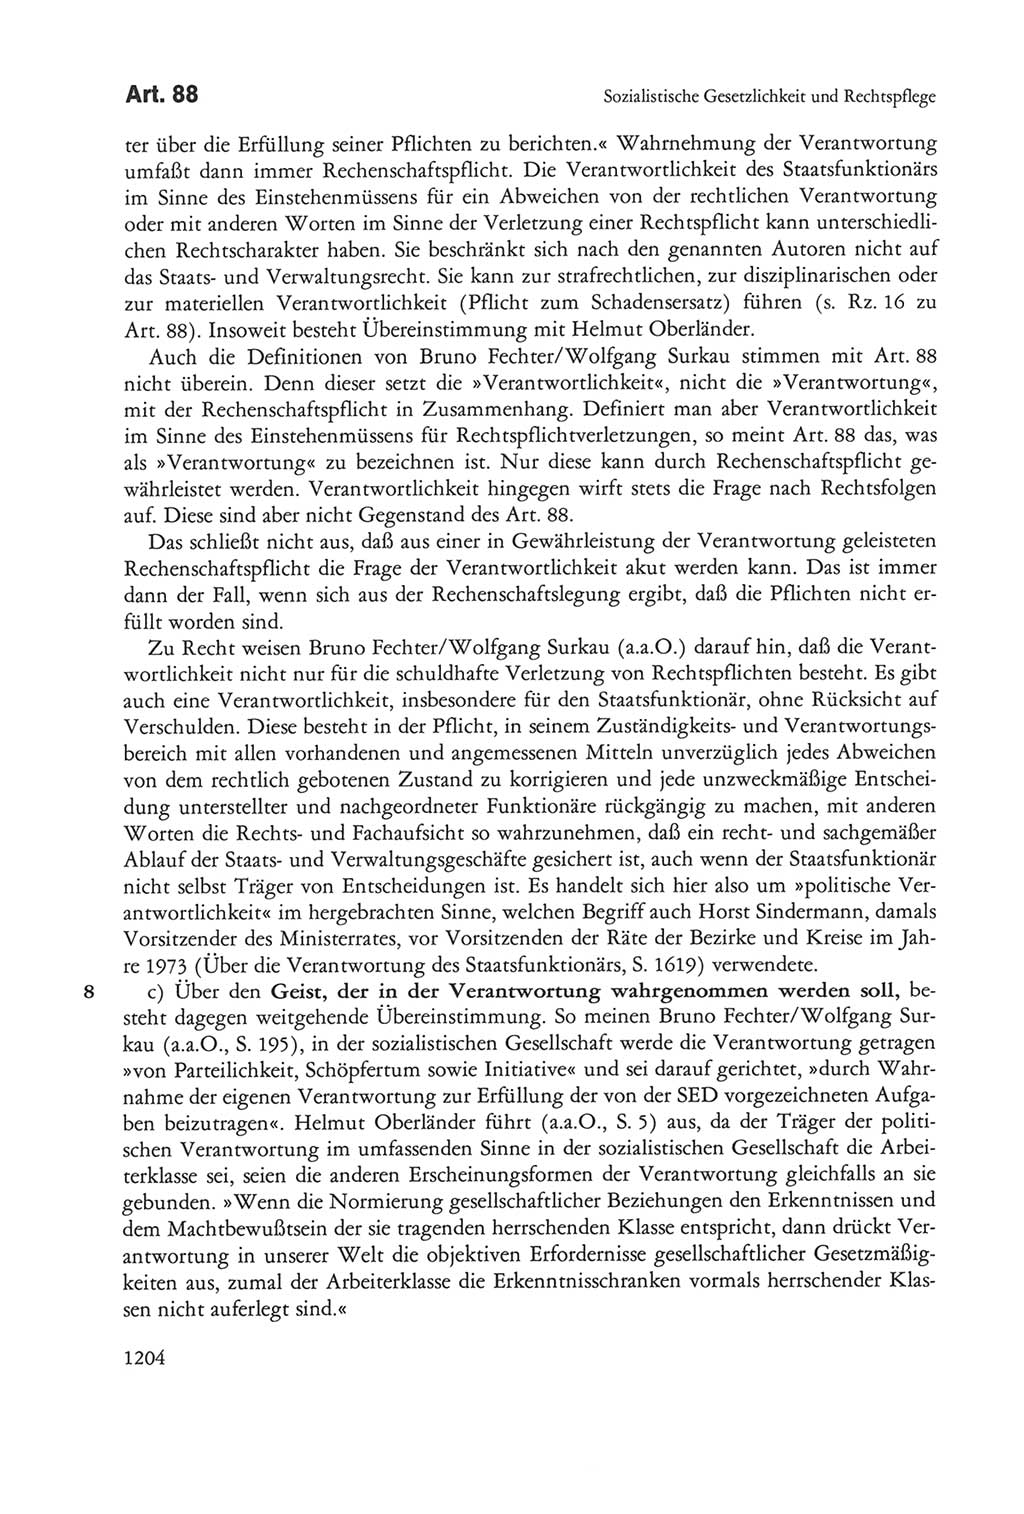 Die sozialistische Verfassung der Deutschen Demokratischen Republik (DDR), Kommentar mit einem Nachtrag 1997, Seite 1204 (Soz. Verf. DDR Komm. Nachtr. 1997, S. 1204)